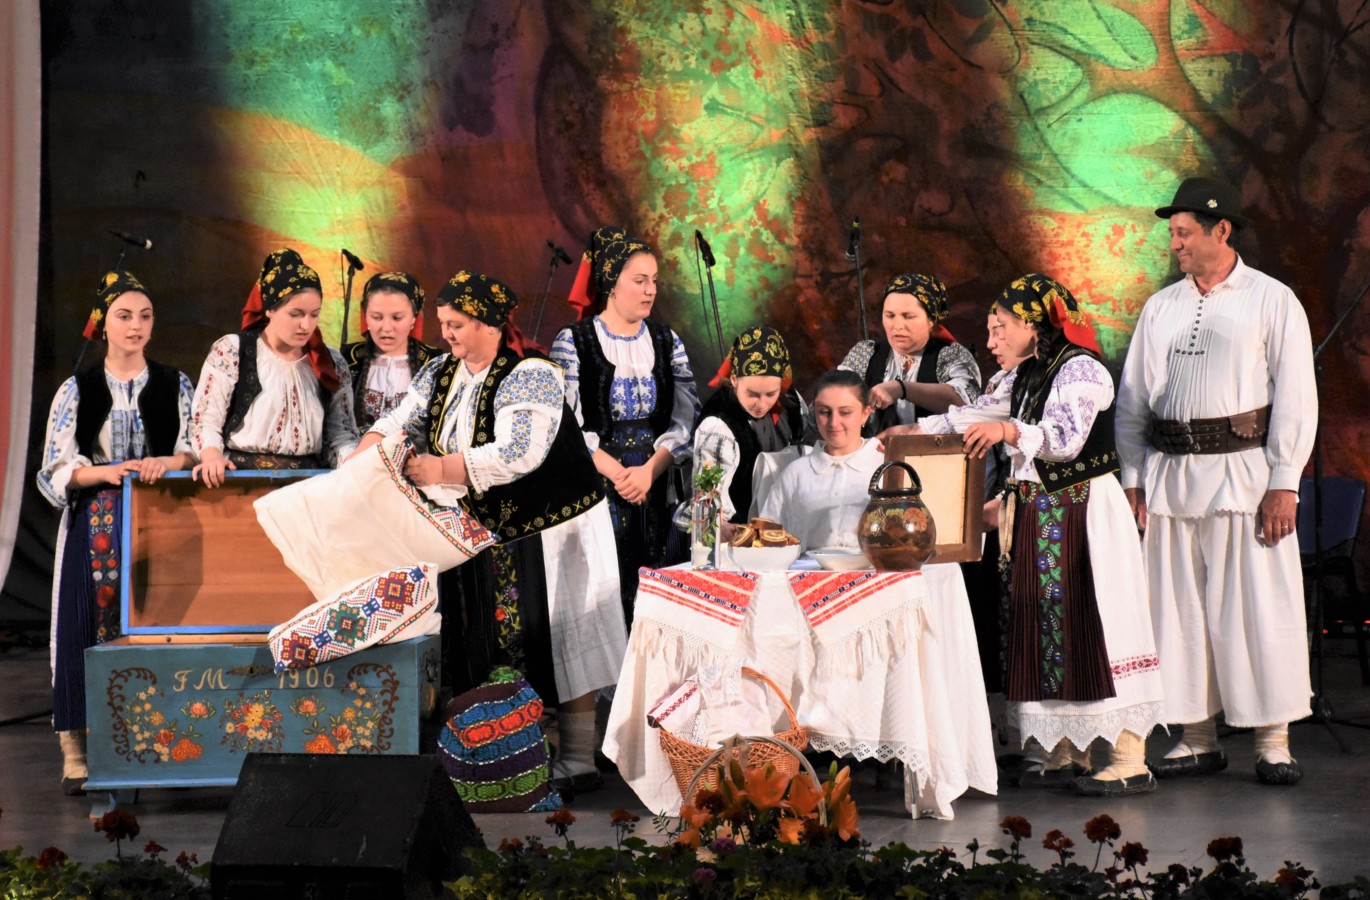 Spectacol folcloric ,,Reîntoarcerea la tradiții”, cu prilejul „Anului omagial al satului românesc” și împlinirii a 20 de ani de la înființarea Radio Renașterea